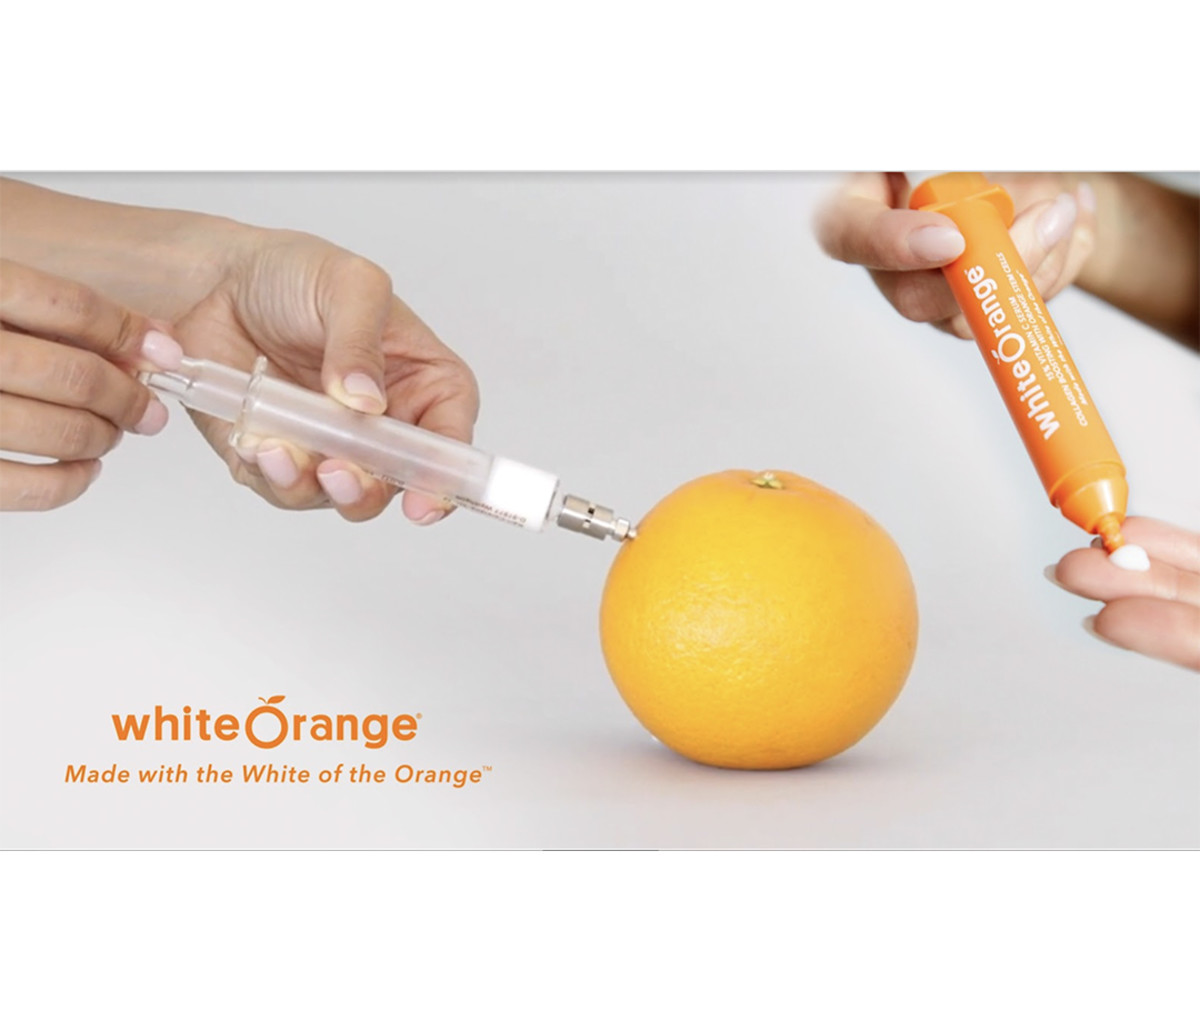 Carishma Khubani’s White Orange